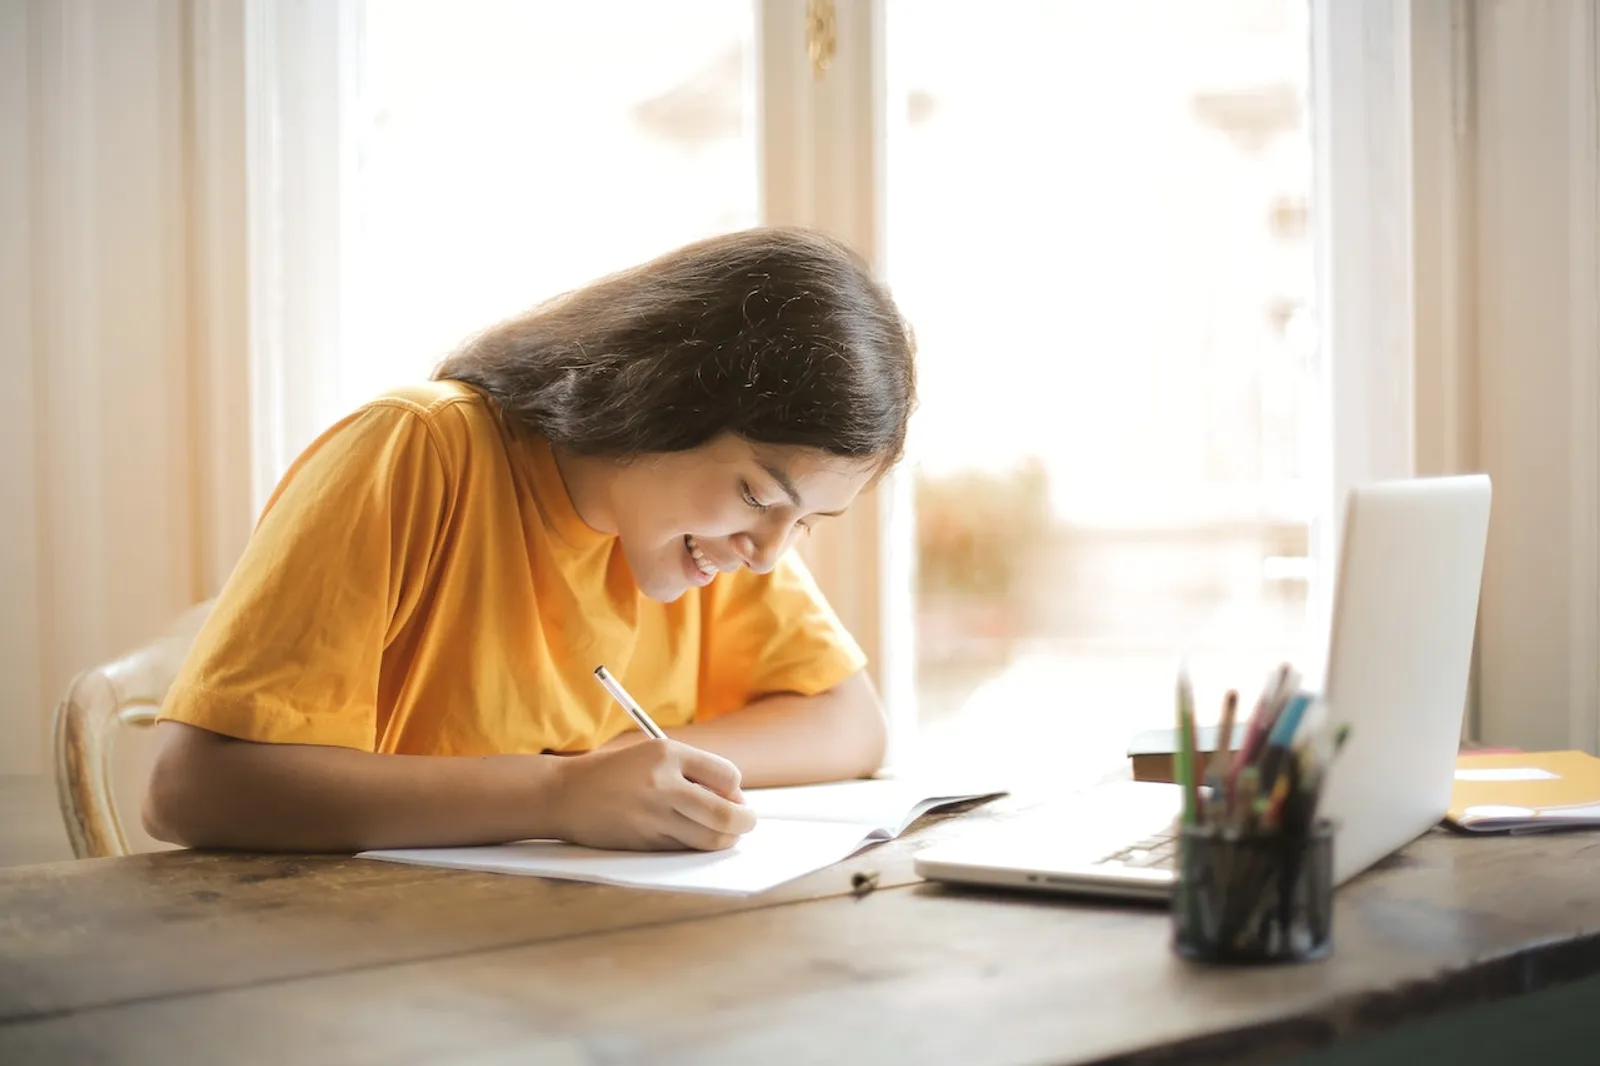 Siap Bikin Tulisan Menarik, Ini 7 Tips Menulis Kreatif Saat Ini